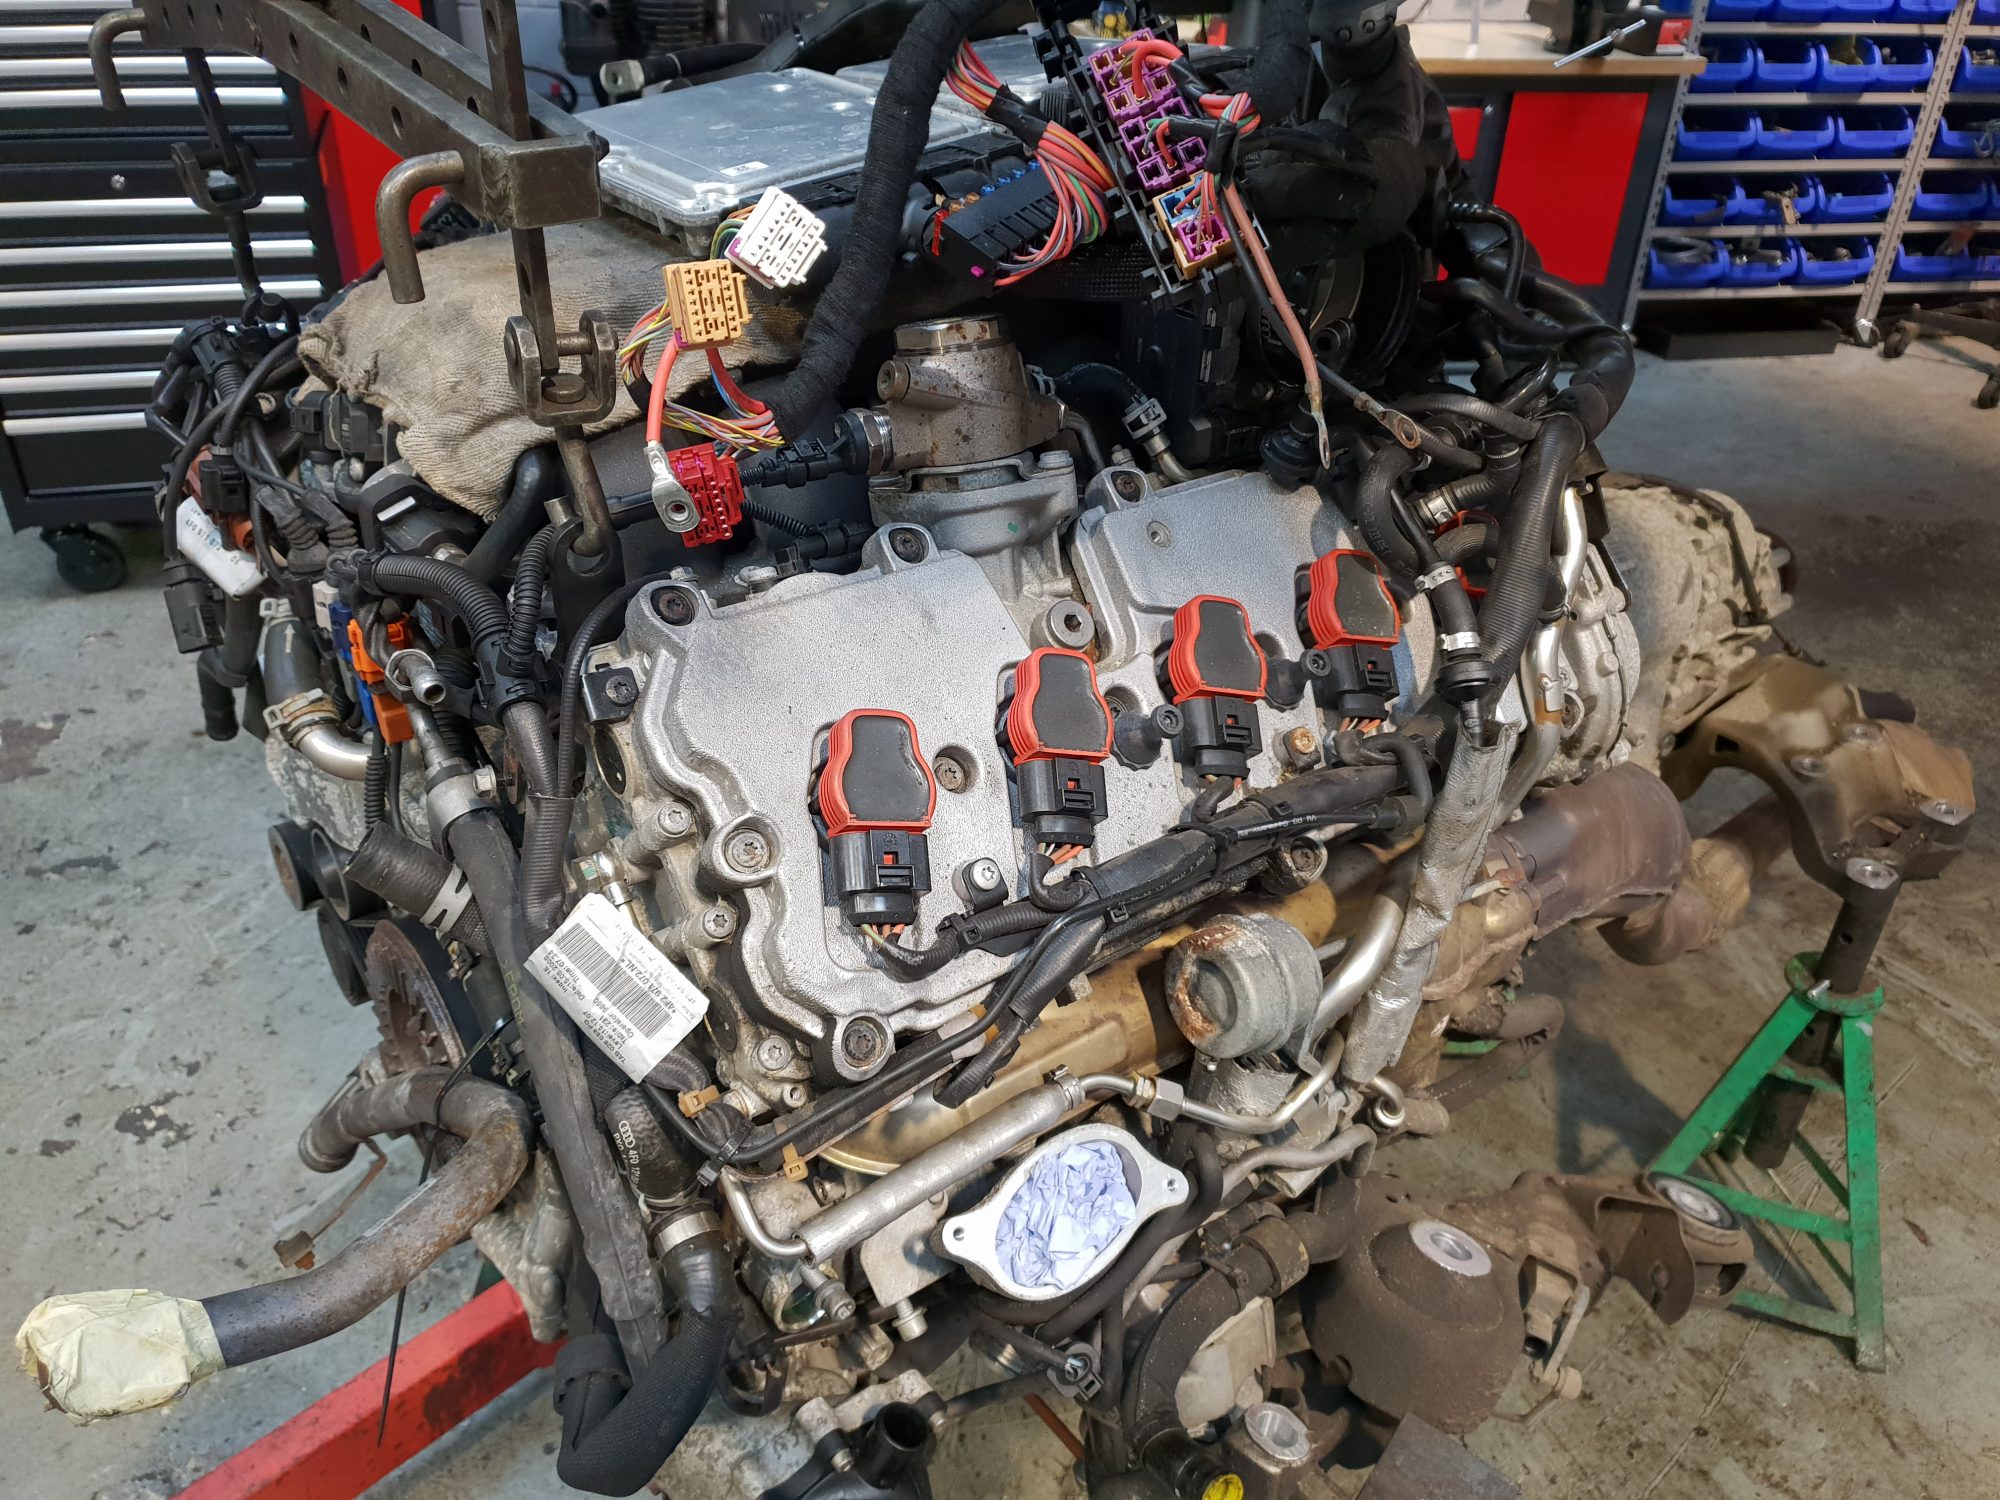 Audi RS6 Coolant pipe failure